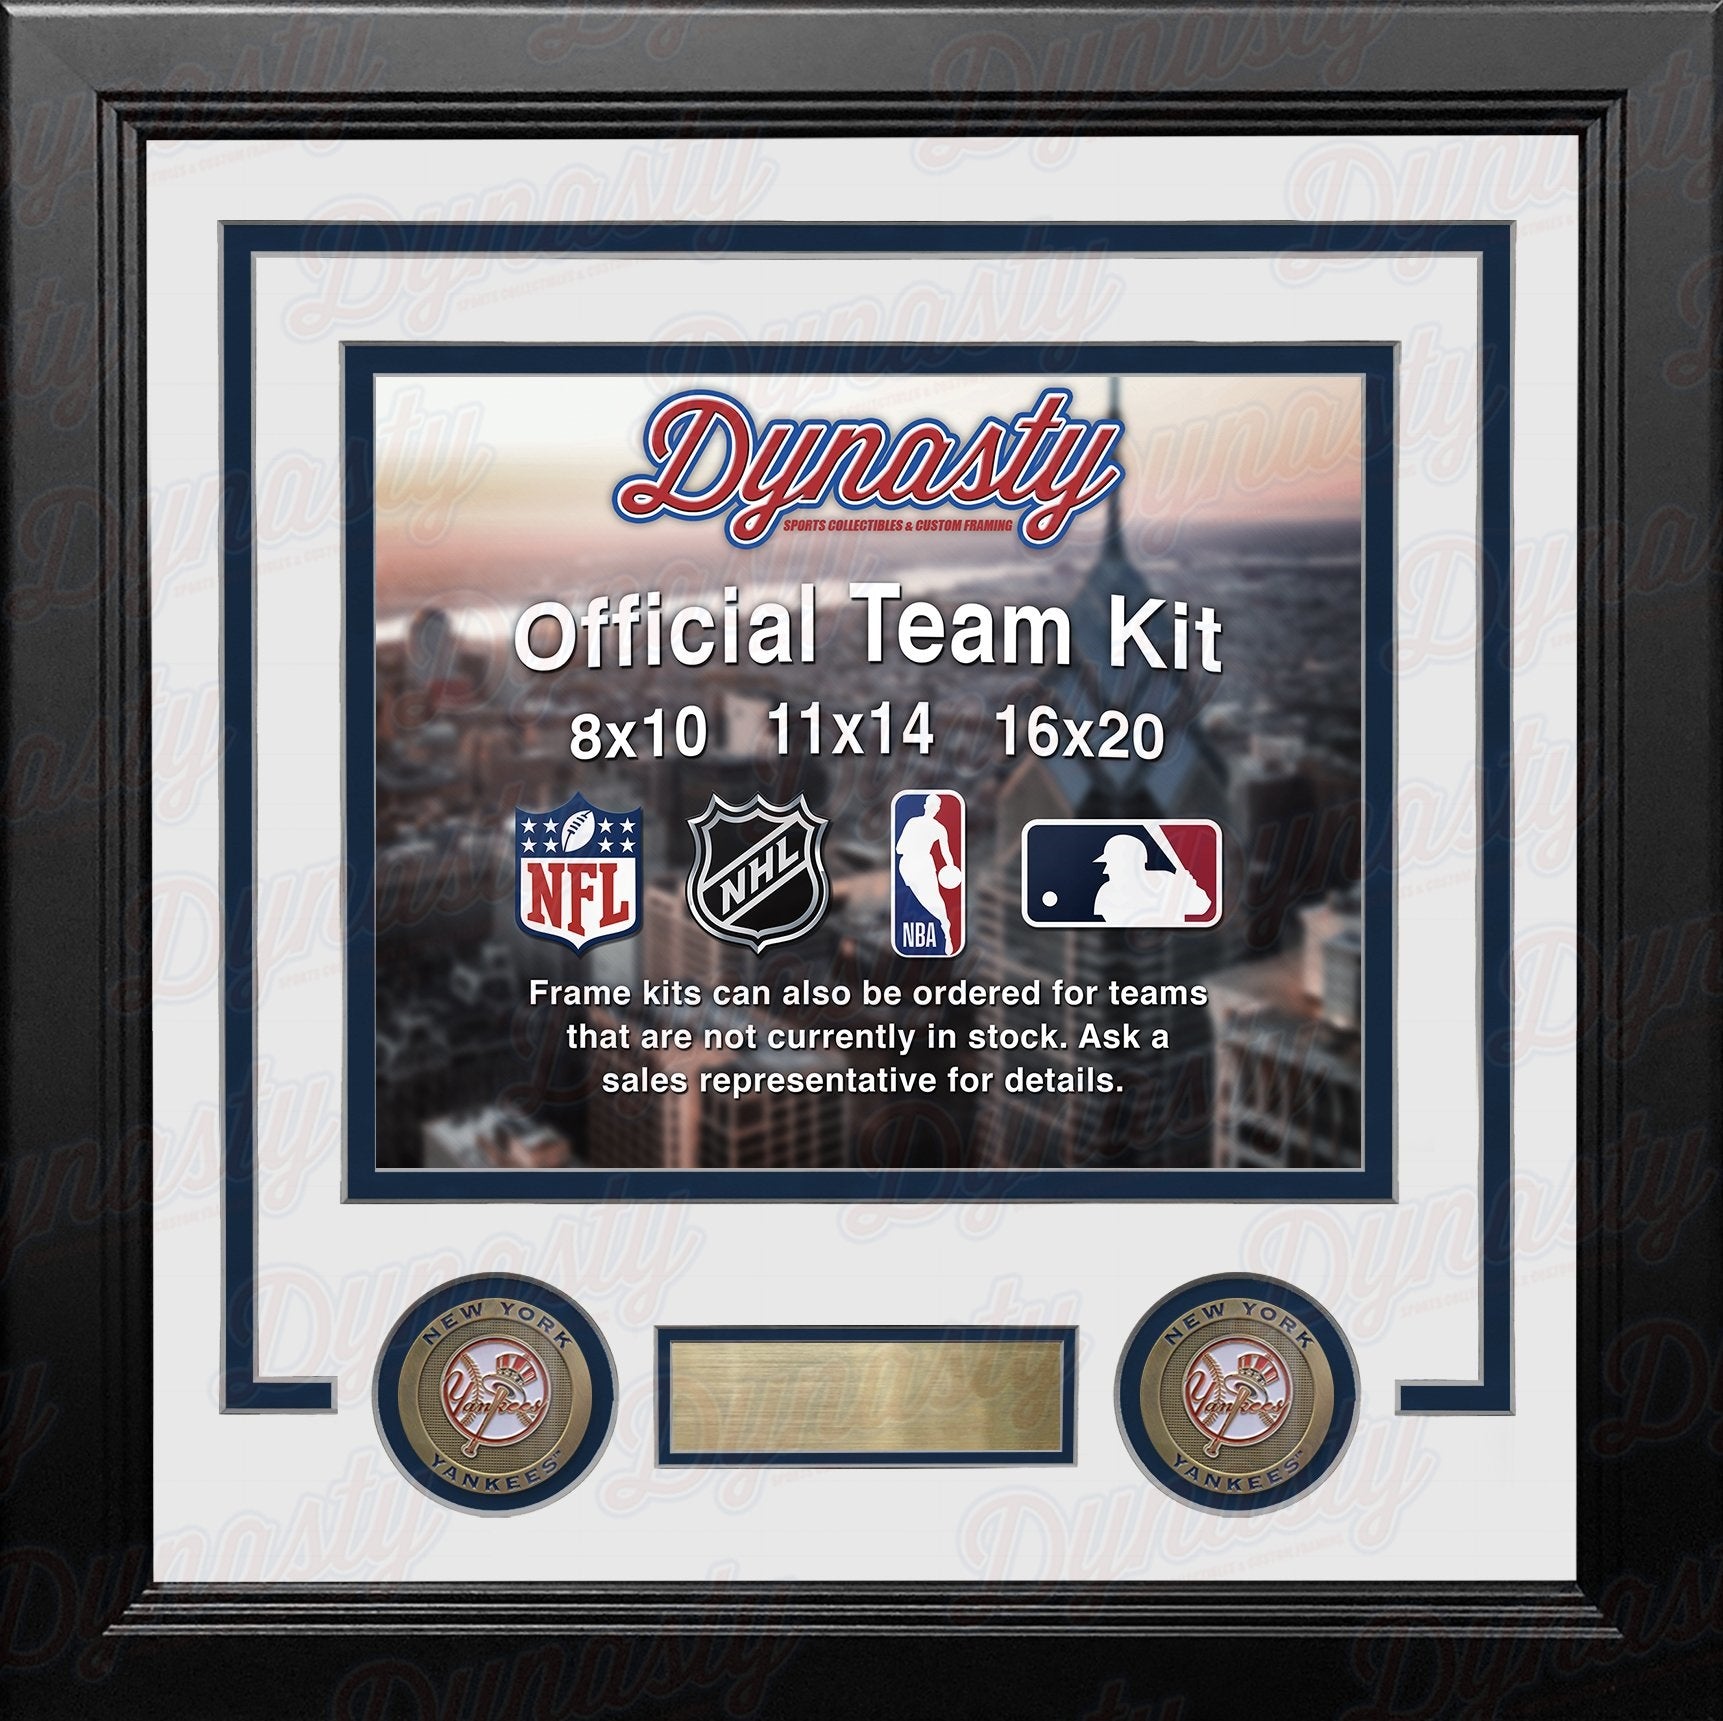 New York Yankees Custom MLB Baseball 8x10 Picture Frame Kit (Multiple Colors) - Dynasty Sports & Framing 